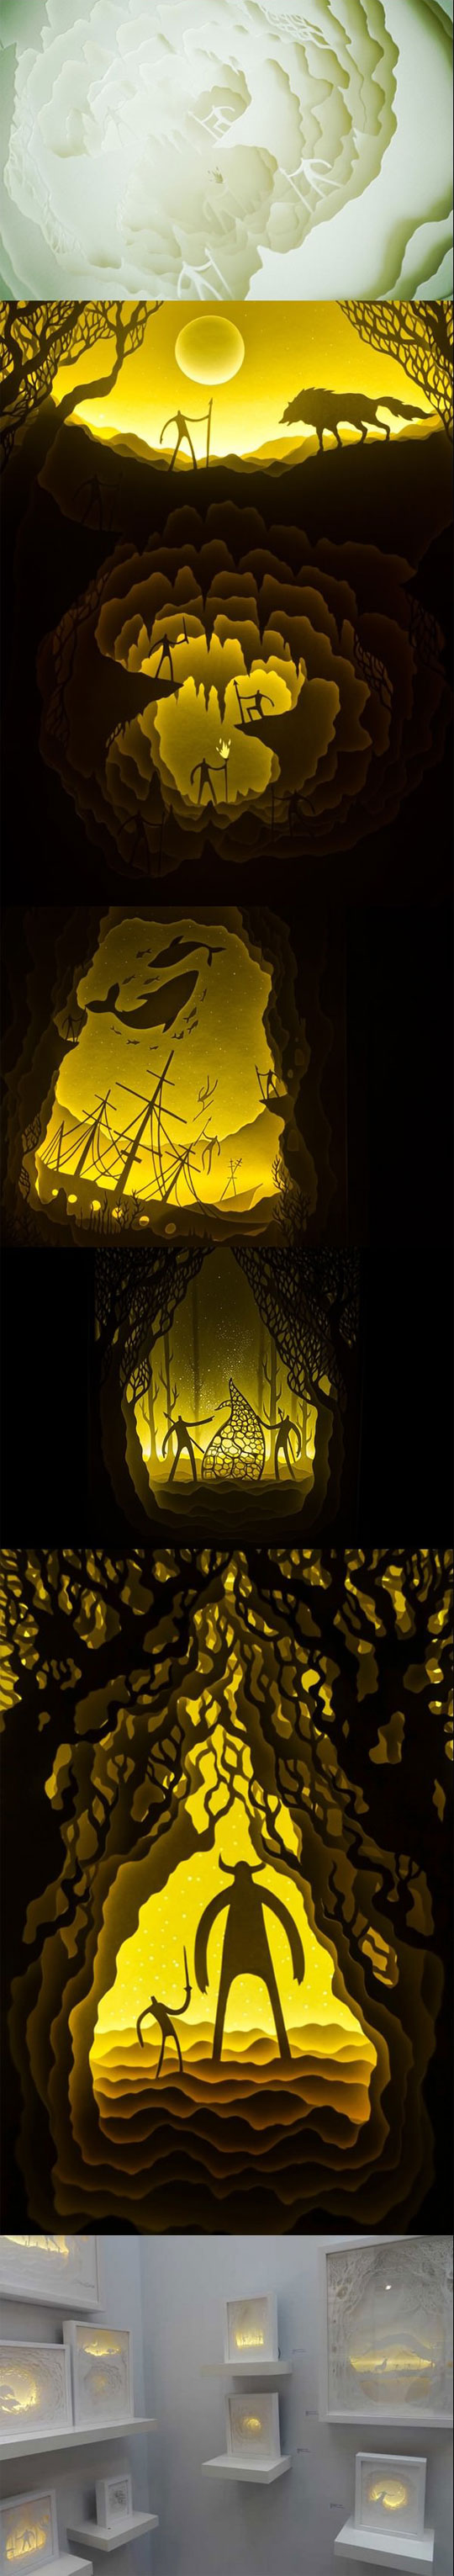 cool-paper-cut-diorama-design-light